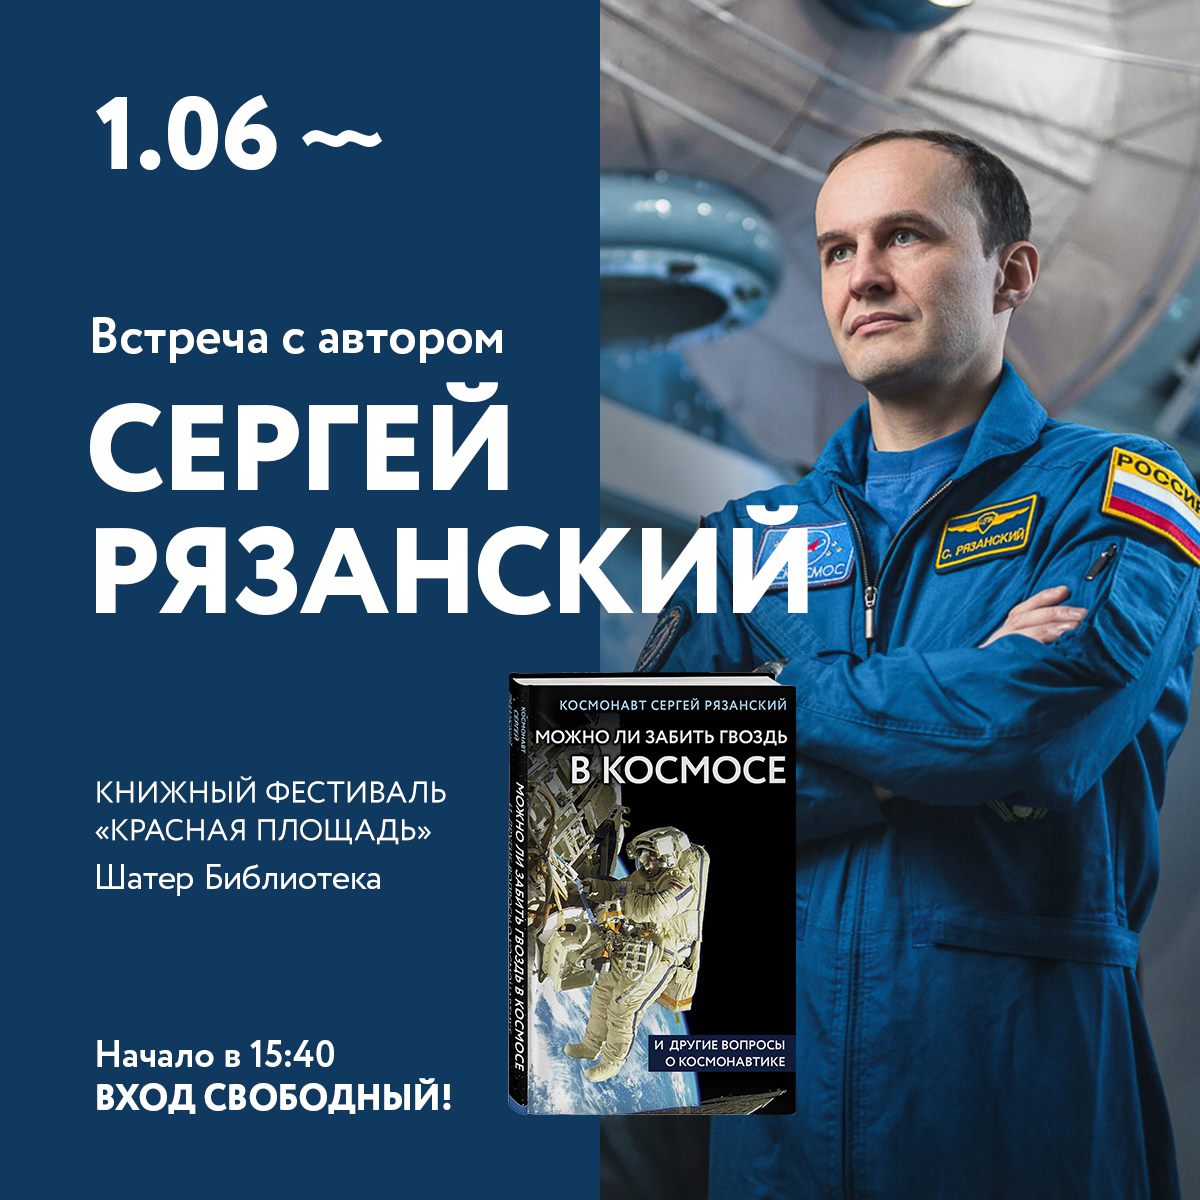 Космонавт Сергей Рязанский выпустил книгу с ответами на вопросы о космосе. Изображение номер 1